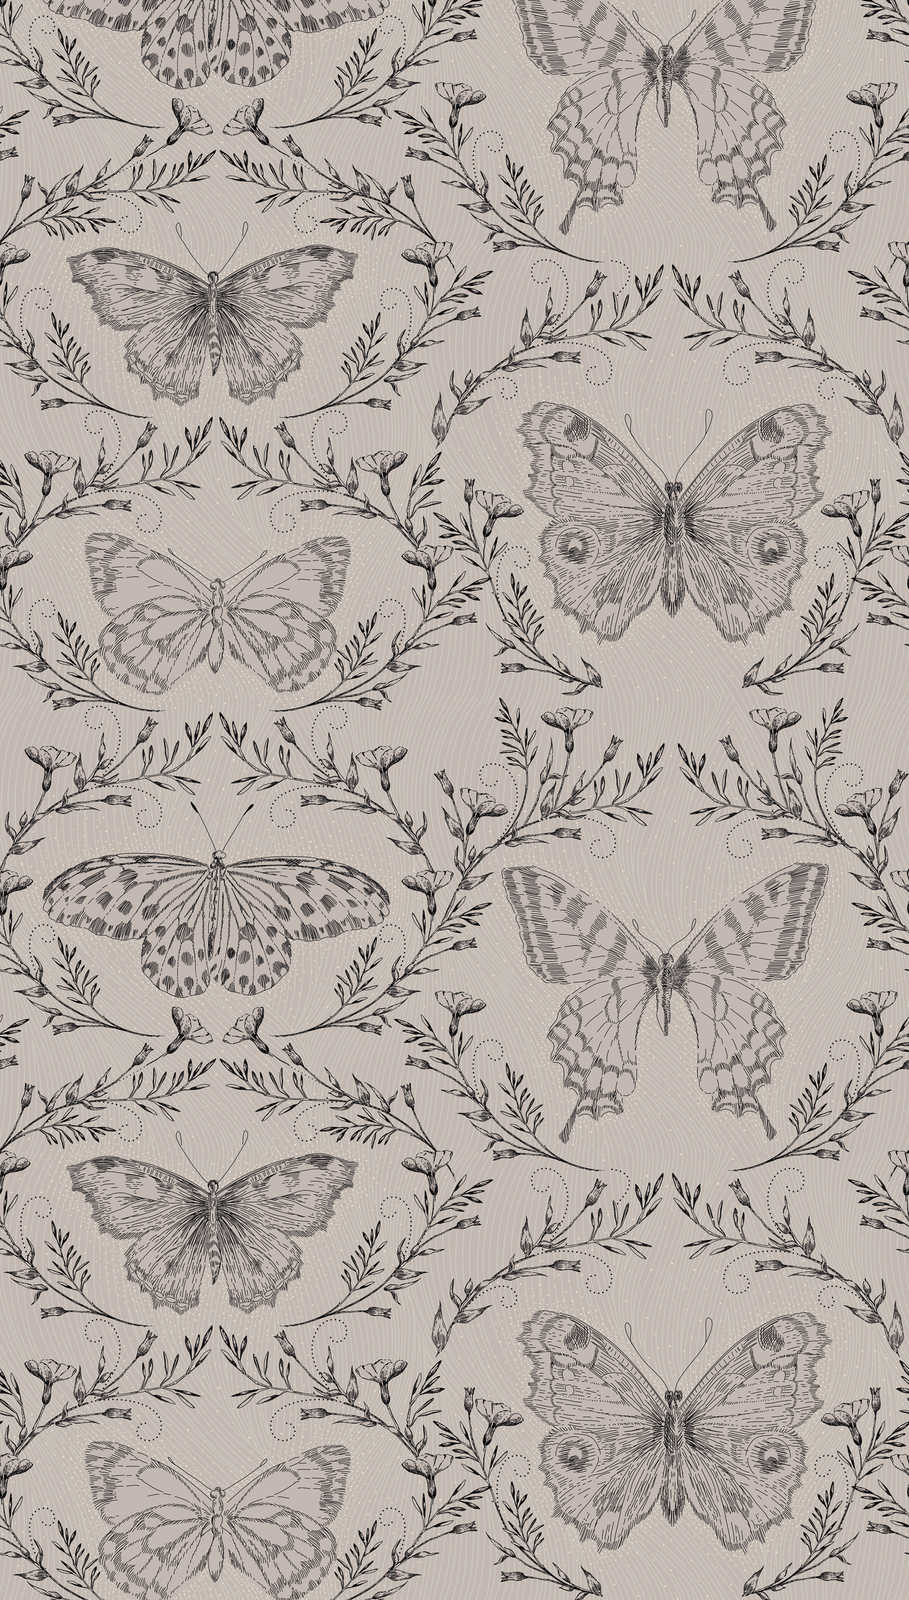             Revêtement mural en papiers peints papillons avec rinceaux au design sombre - gris, gris, noir
        